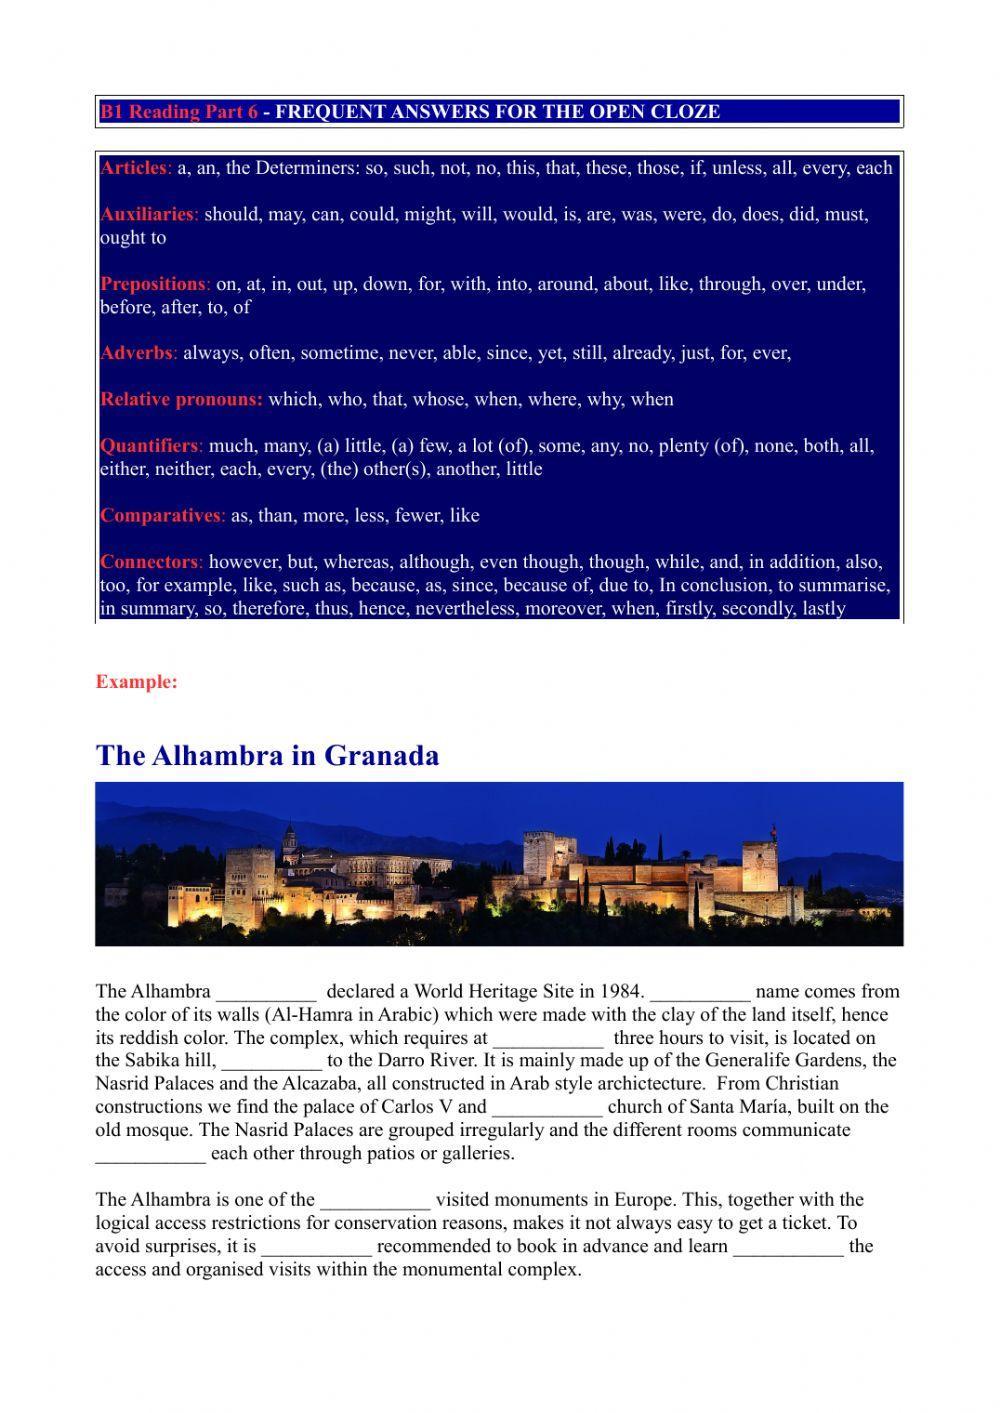 PET Reading Part 6 -The Alhambra - Granada-